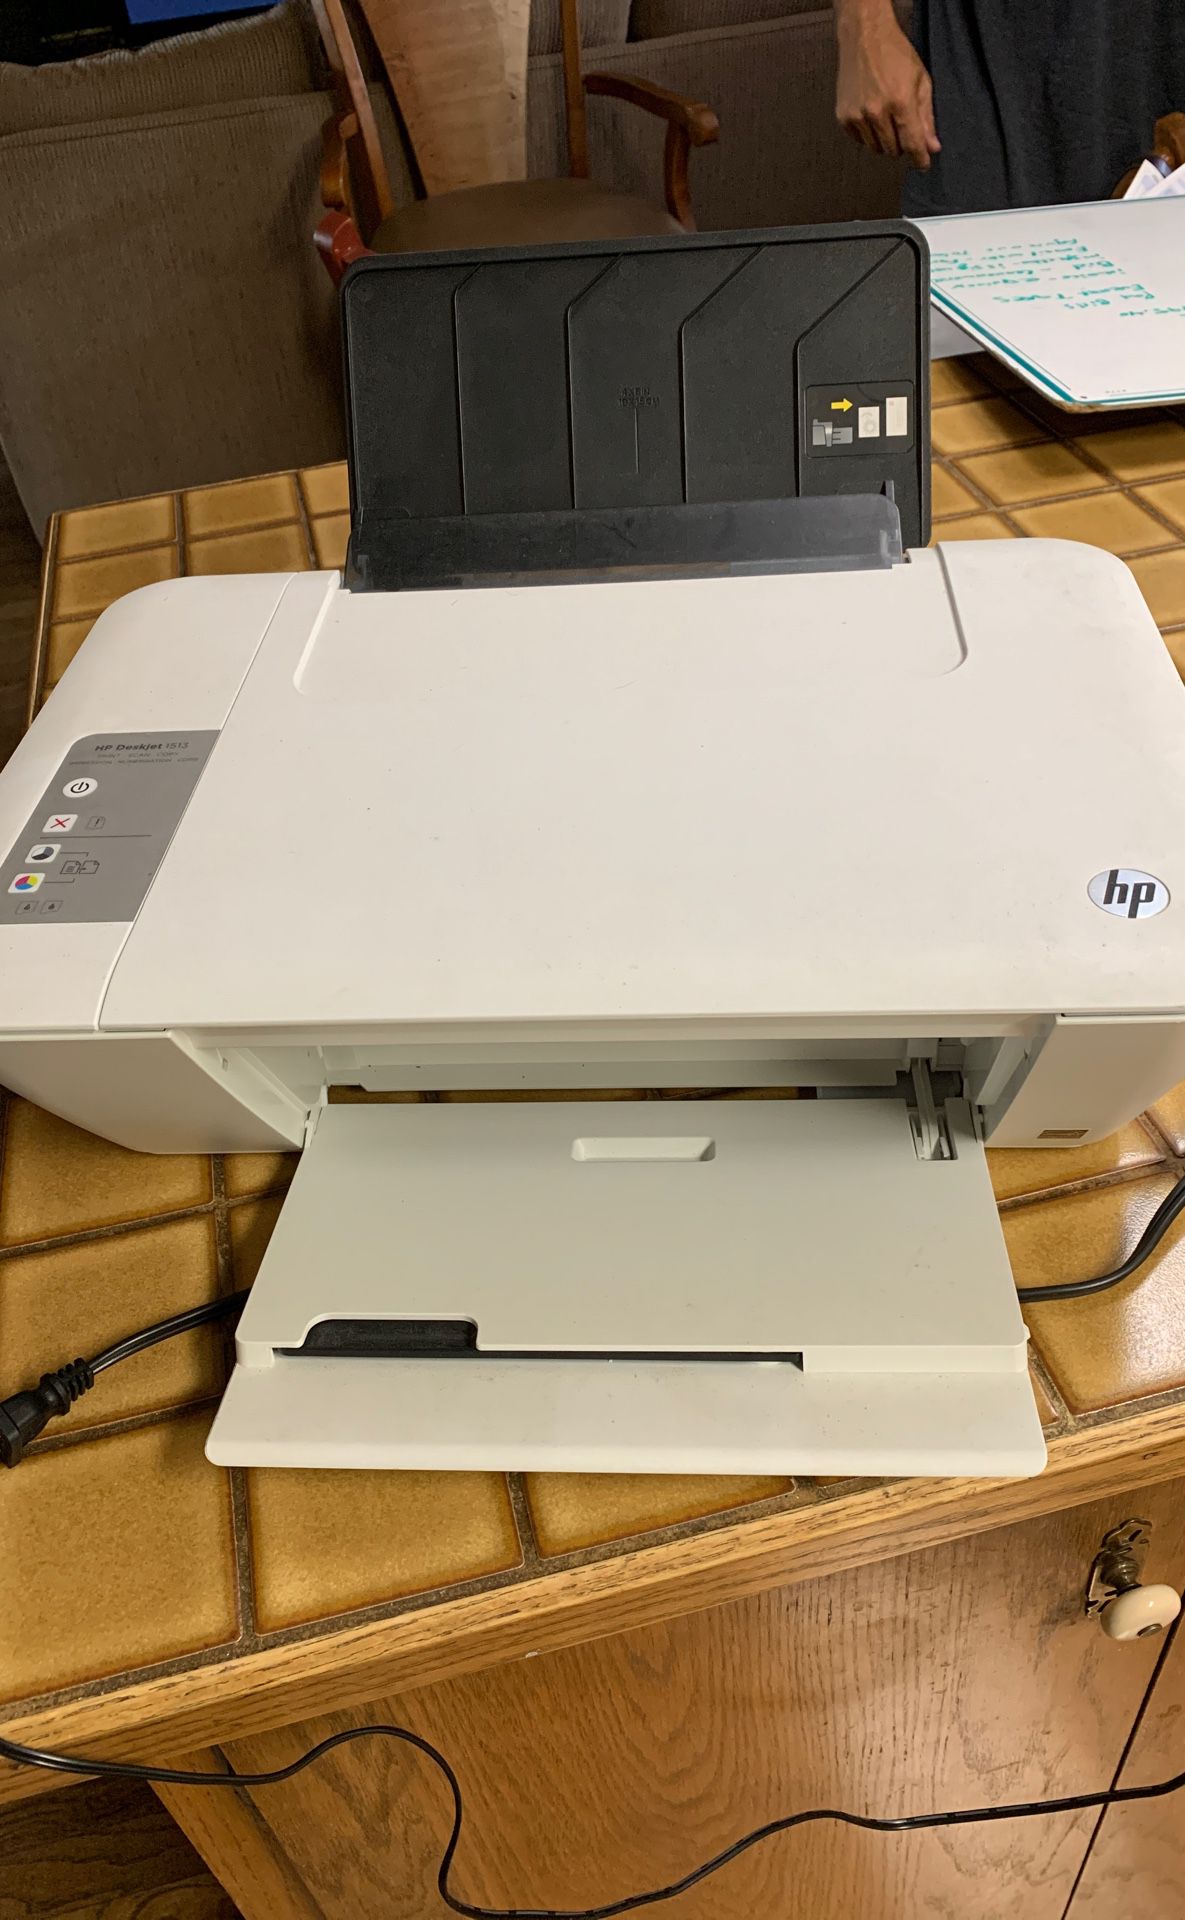 HP Deskjet 1513 print, scan, copy